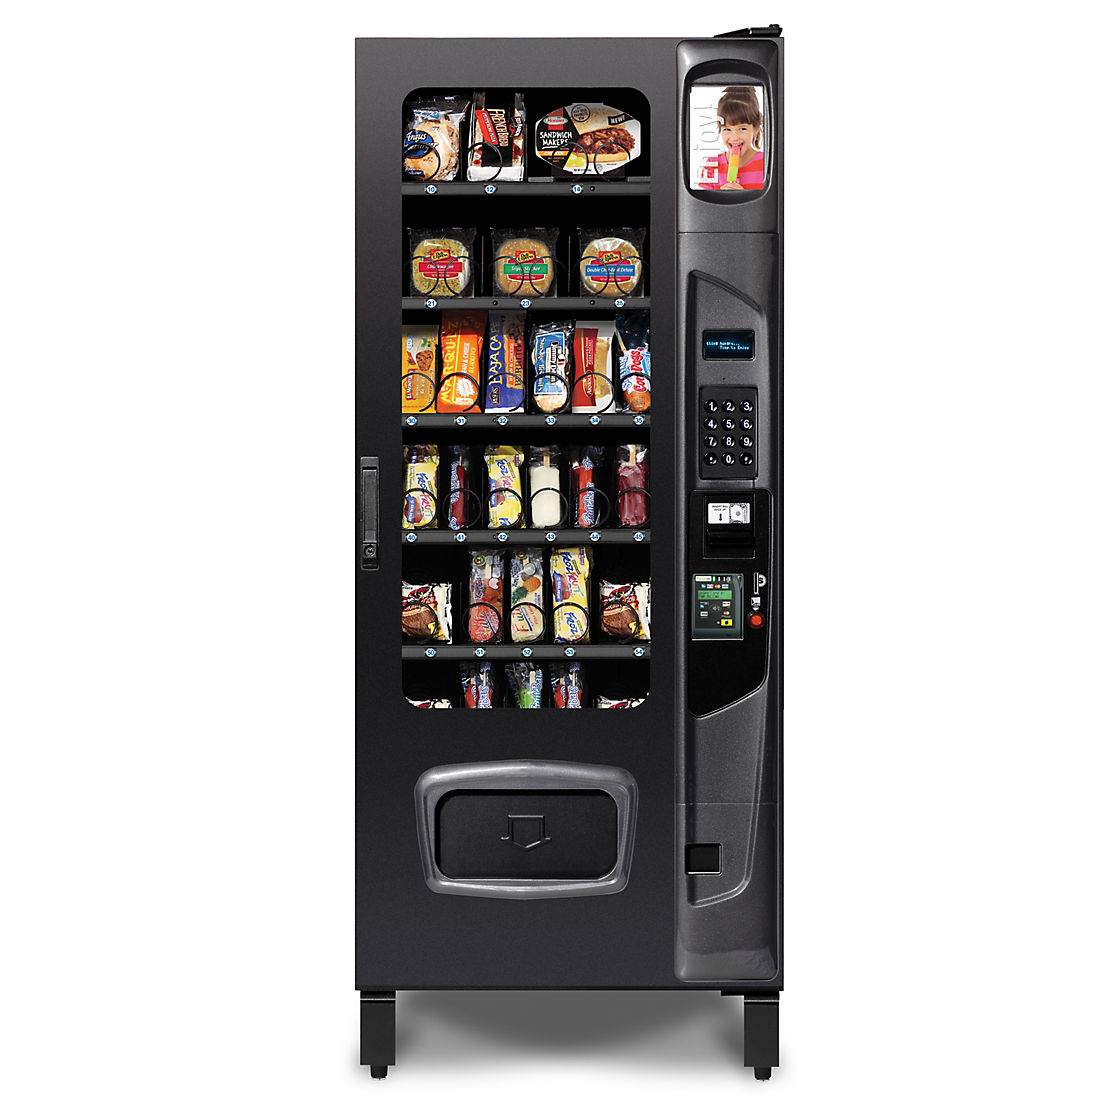 Buy Selectivend Frozen Food Vending Machine - BJs WholeSale Club